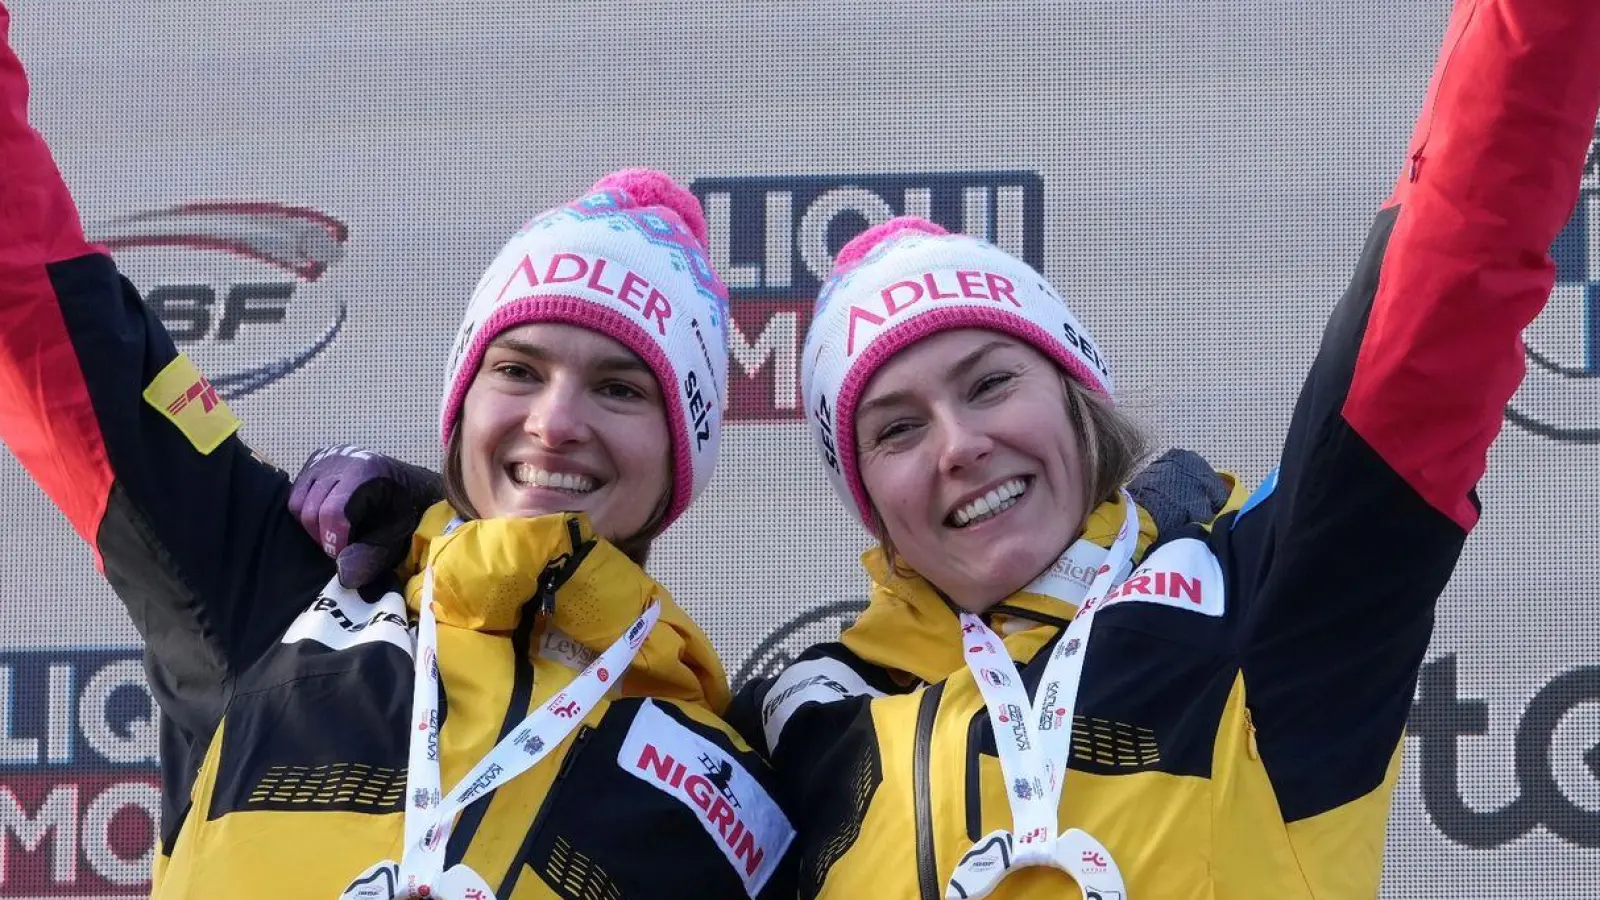 Laura Nolte (r) und Neele Schuten siegten in Sigulda im Zweierbob. (Foto: Oksana Dzadan/AP/dpa)